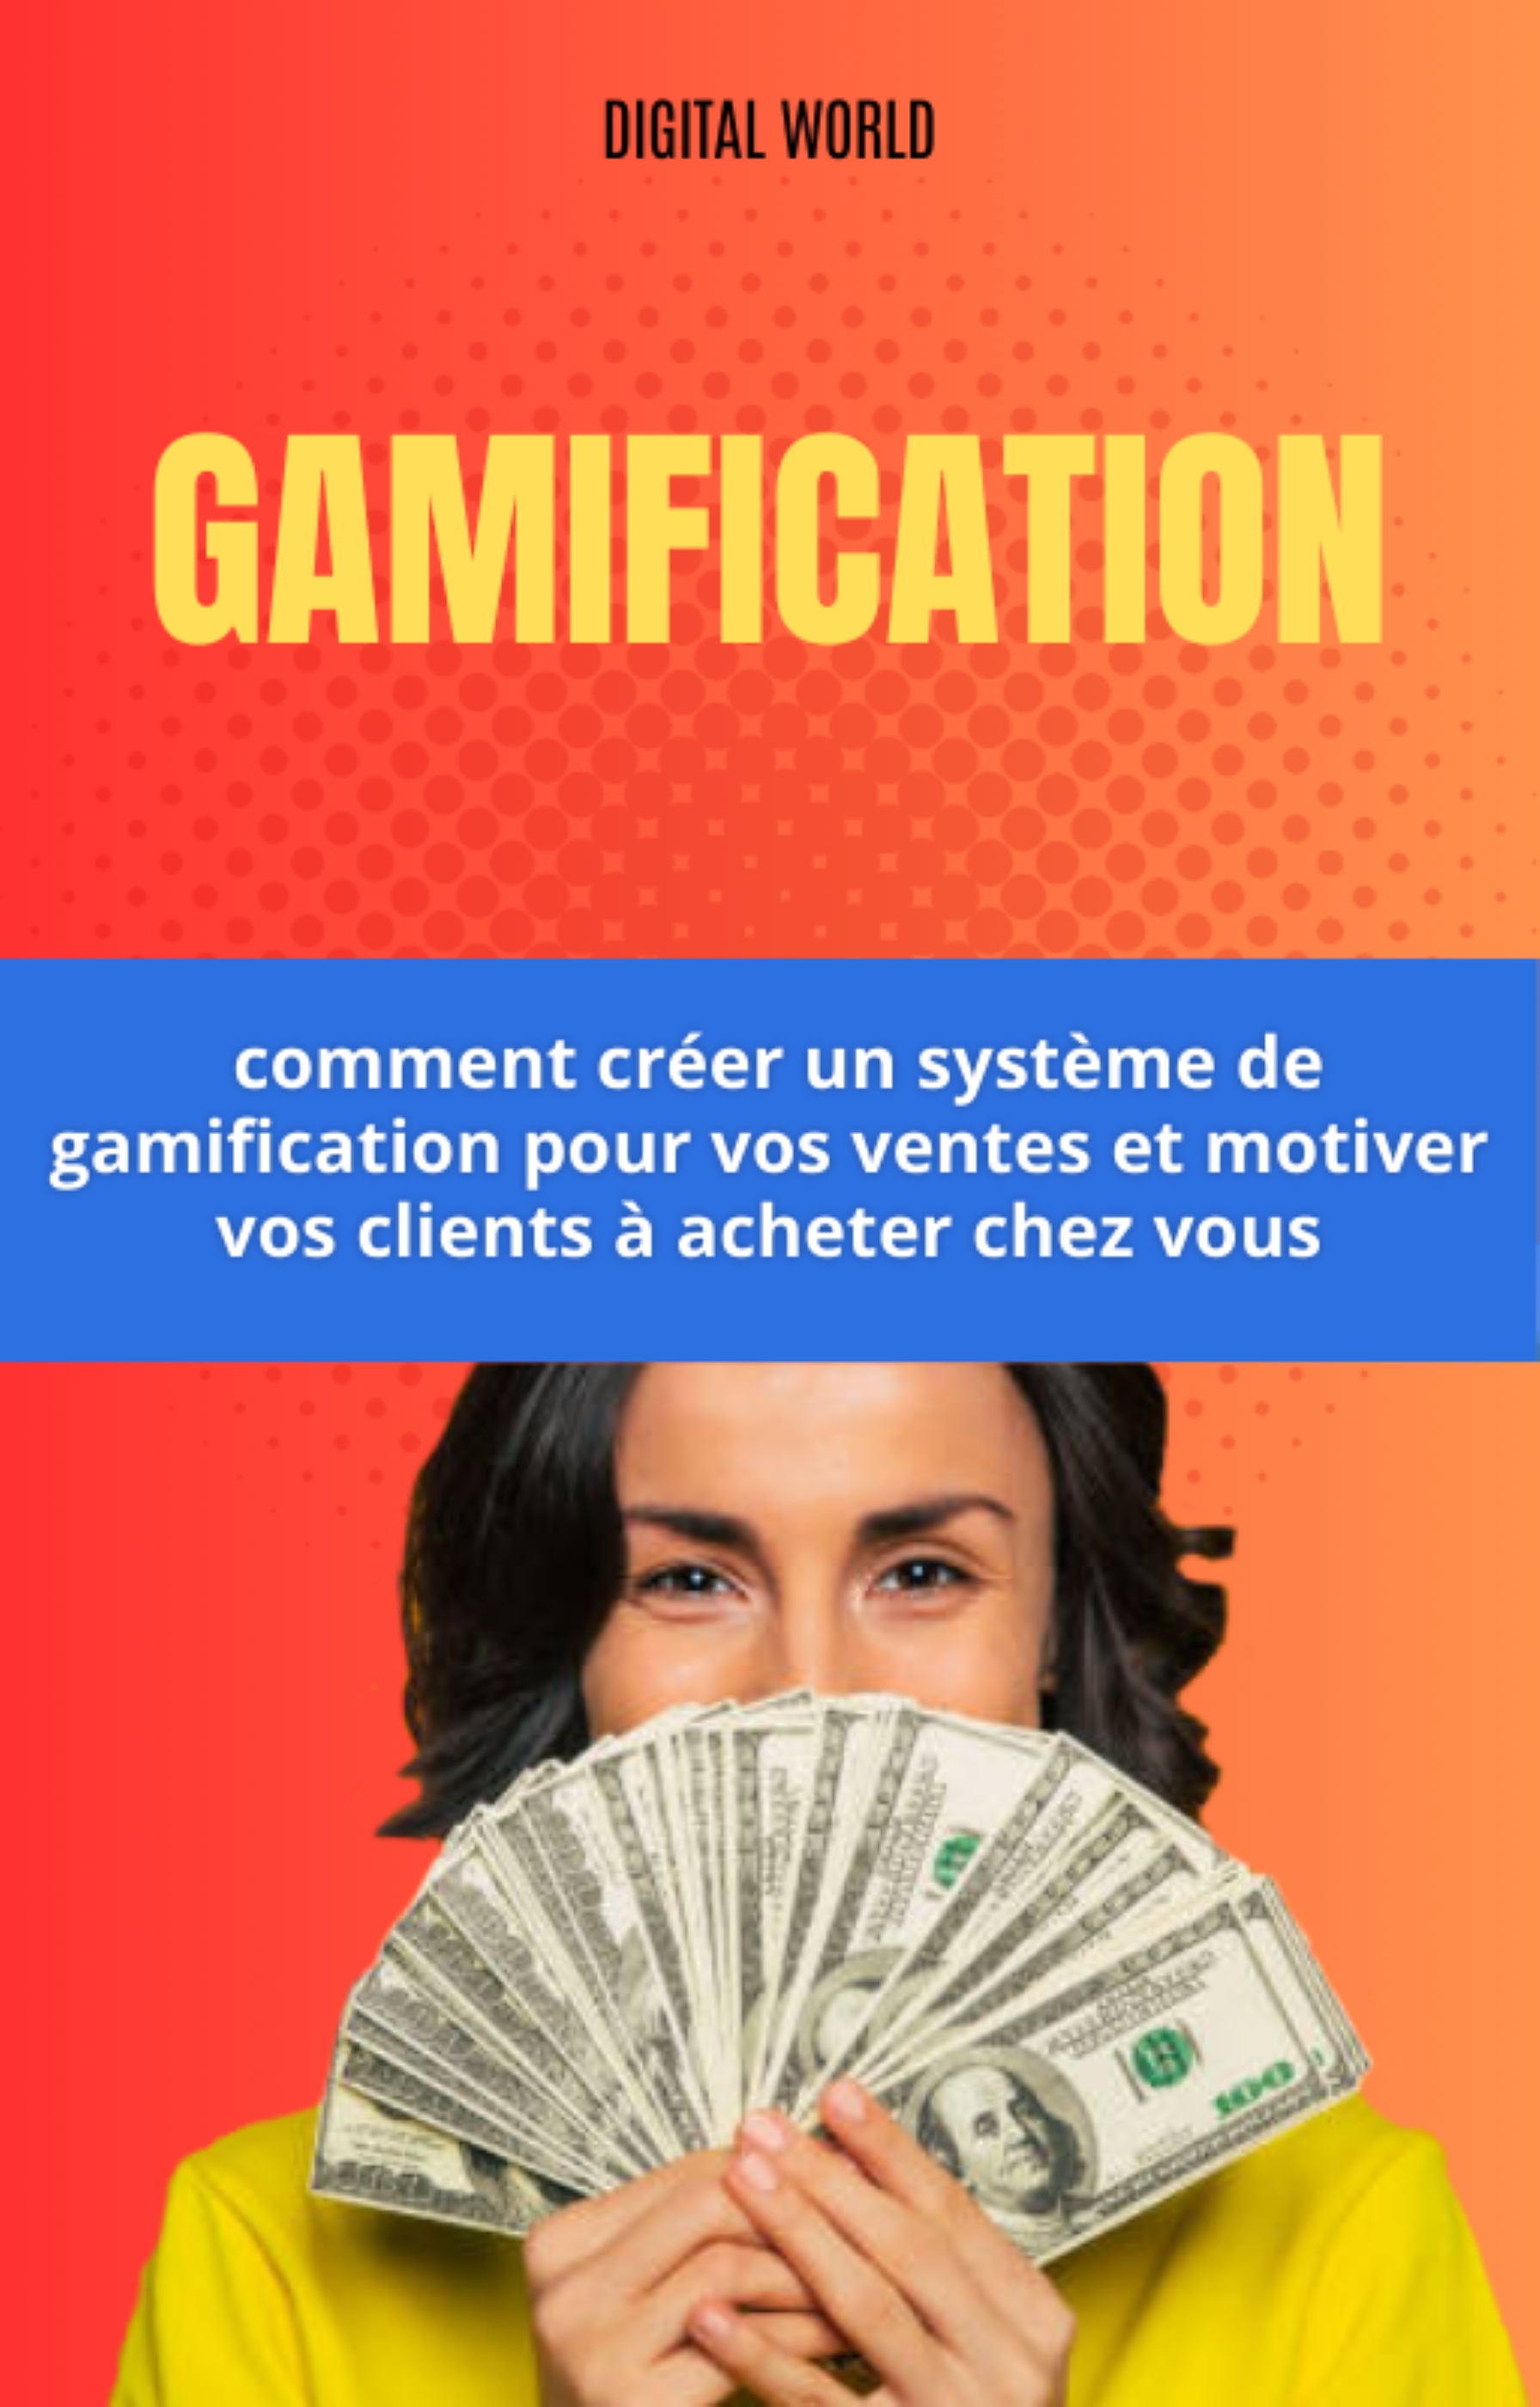 Gamification - comment créer un système de gamification pour vos ventes et motiver vos clients à acheter chez vous